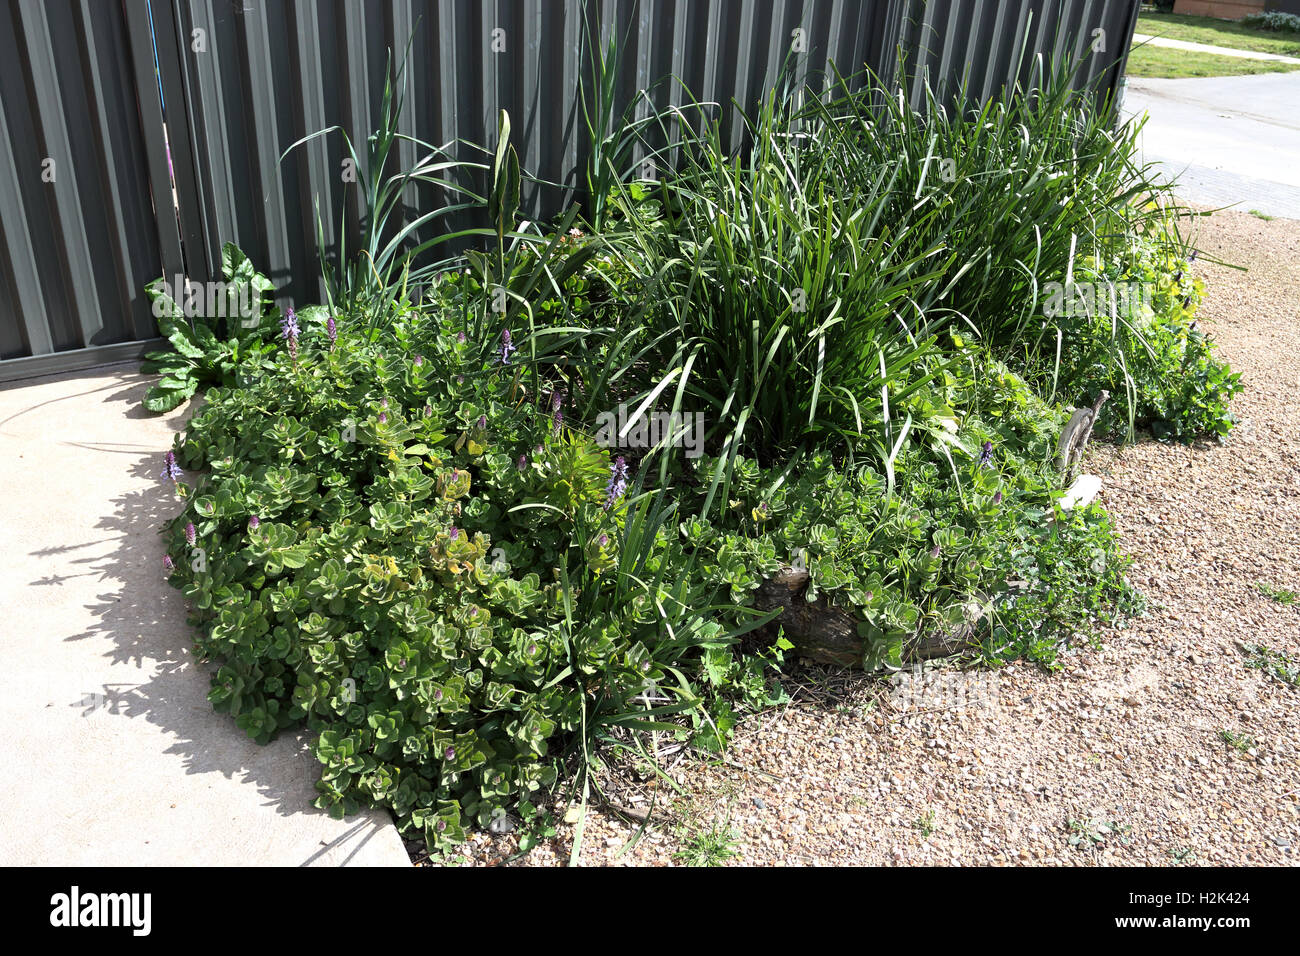 Varietà di piante come Lomandra erba, Dogbane e tarassaco crescente nei pressi del recinto del cortile Foto Stock